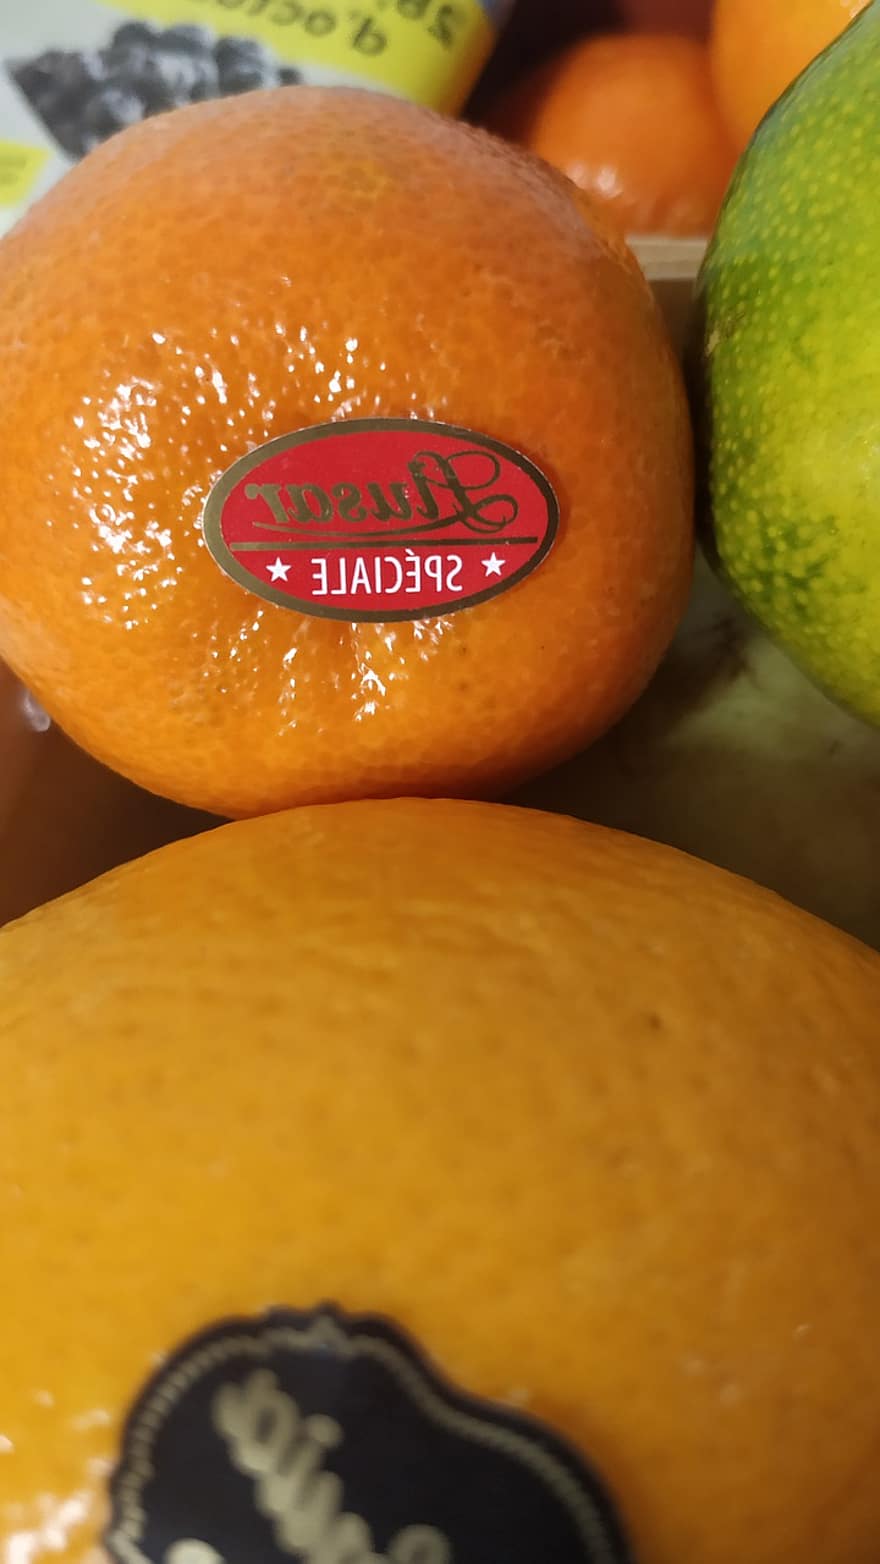 mandarin apelsiner, apelsiner, citrusfrukter, marknadsföra